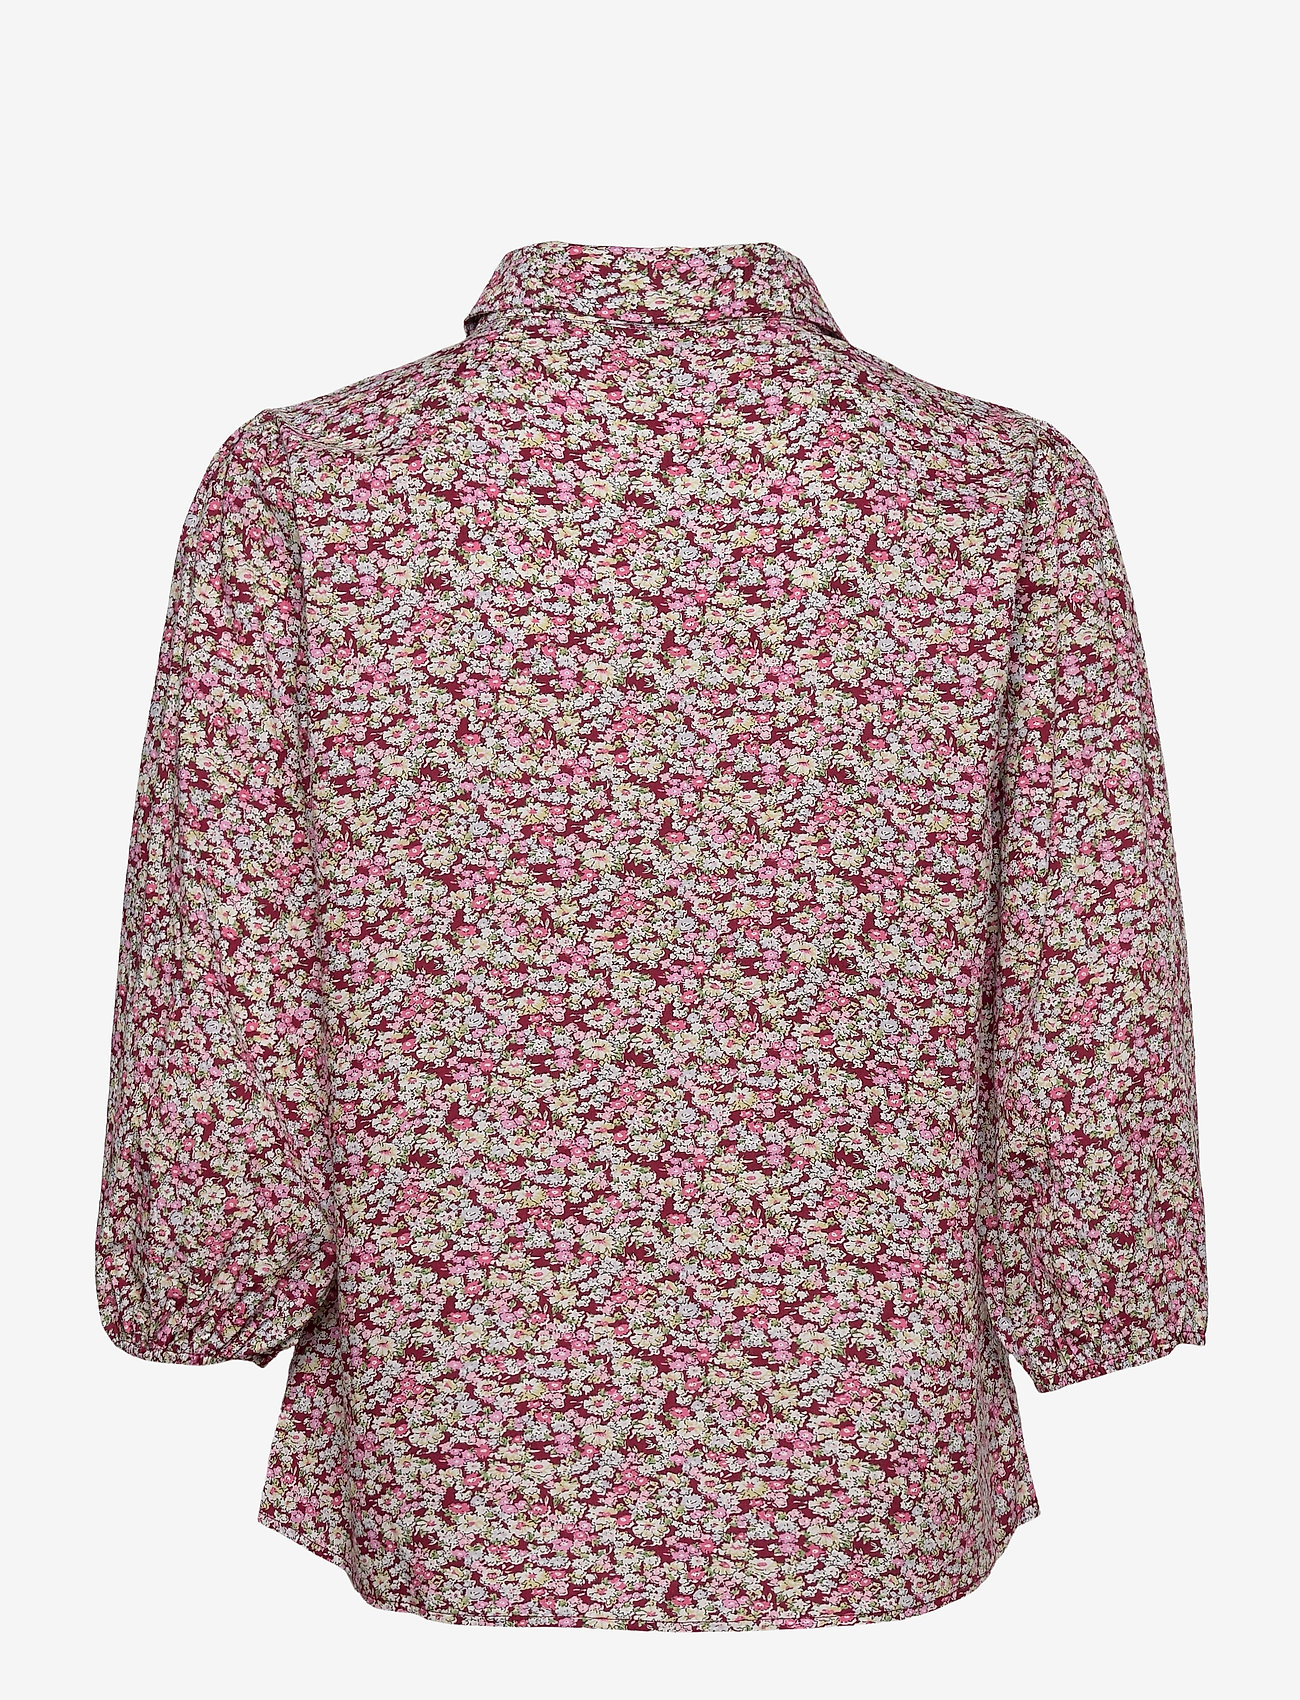 Minus - Rasmina shirt - overhemden met lange mouwen - pink flower print - 1